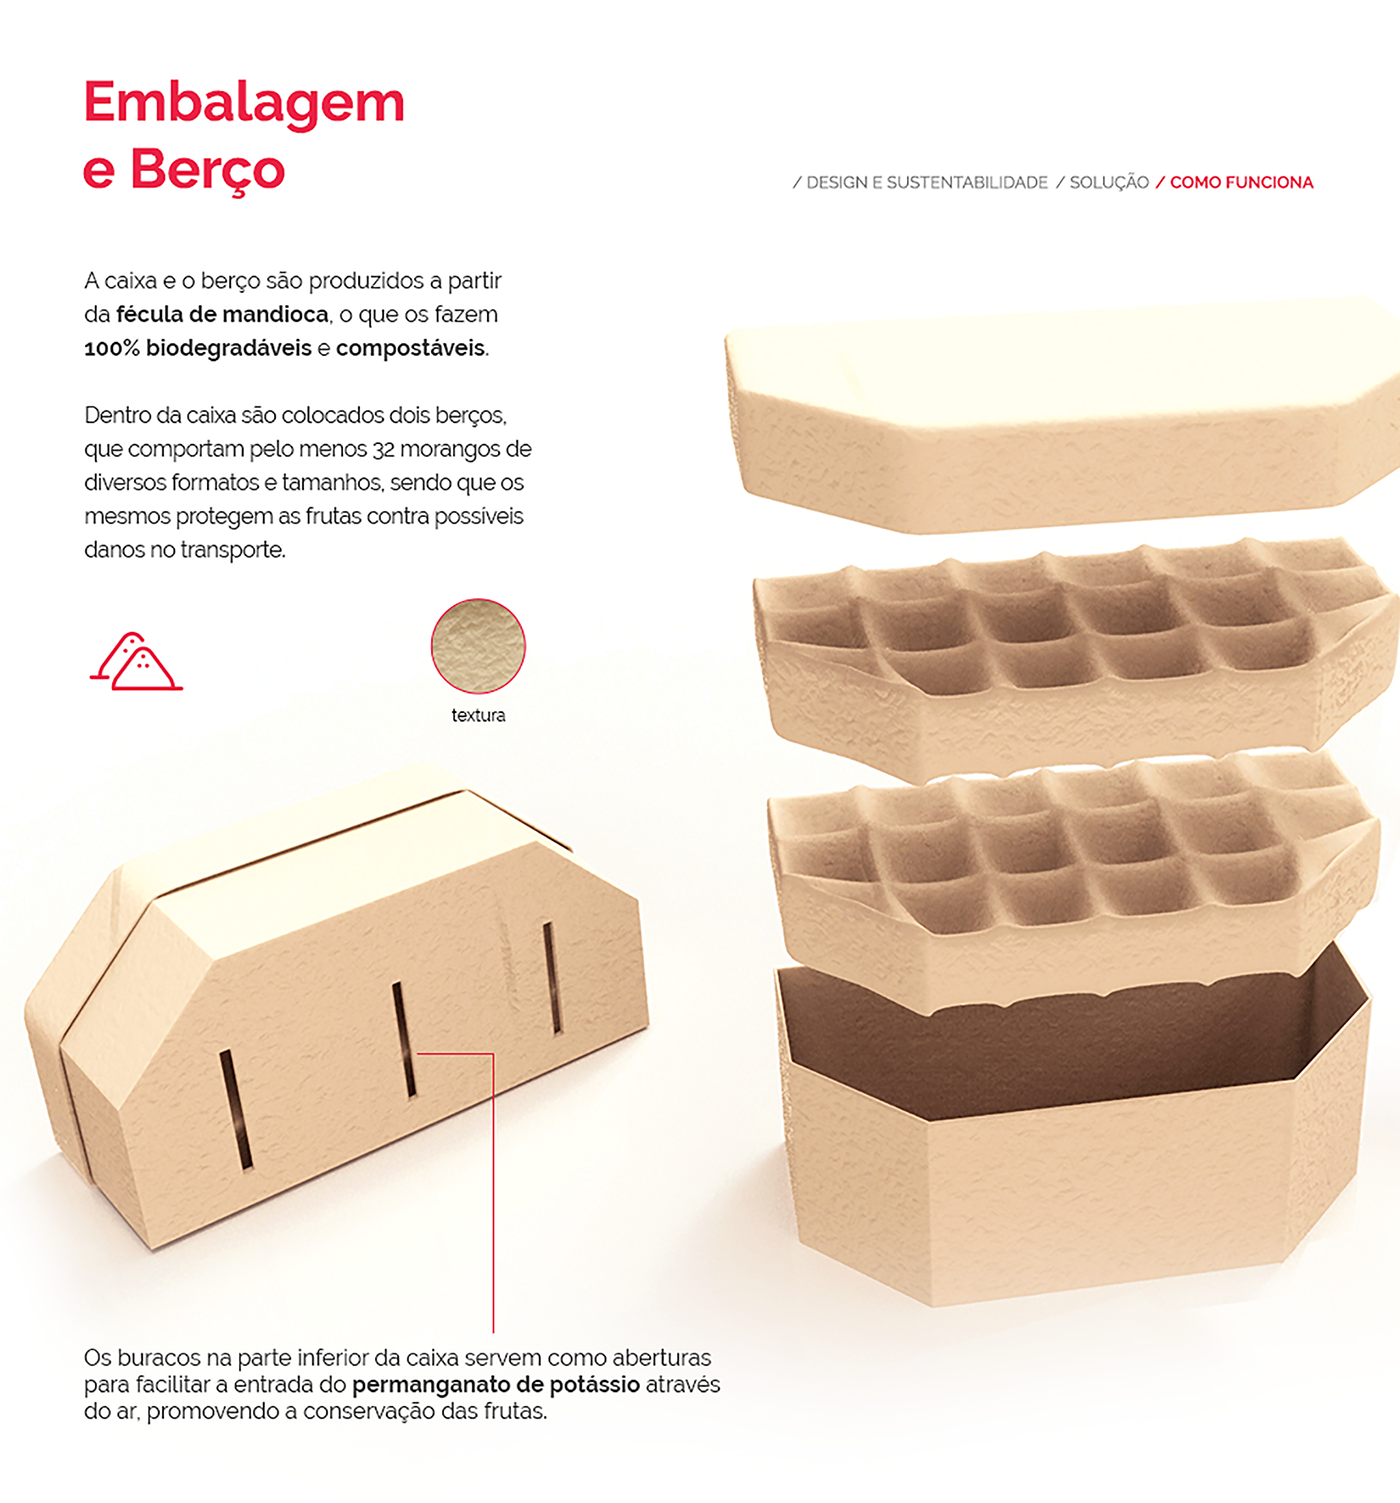 product design Autodesk embalagem designindustrial design de produto eco design design sustentavel